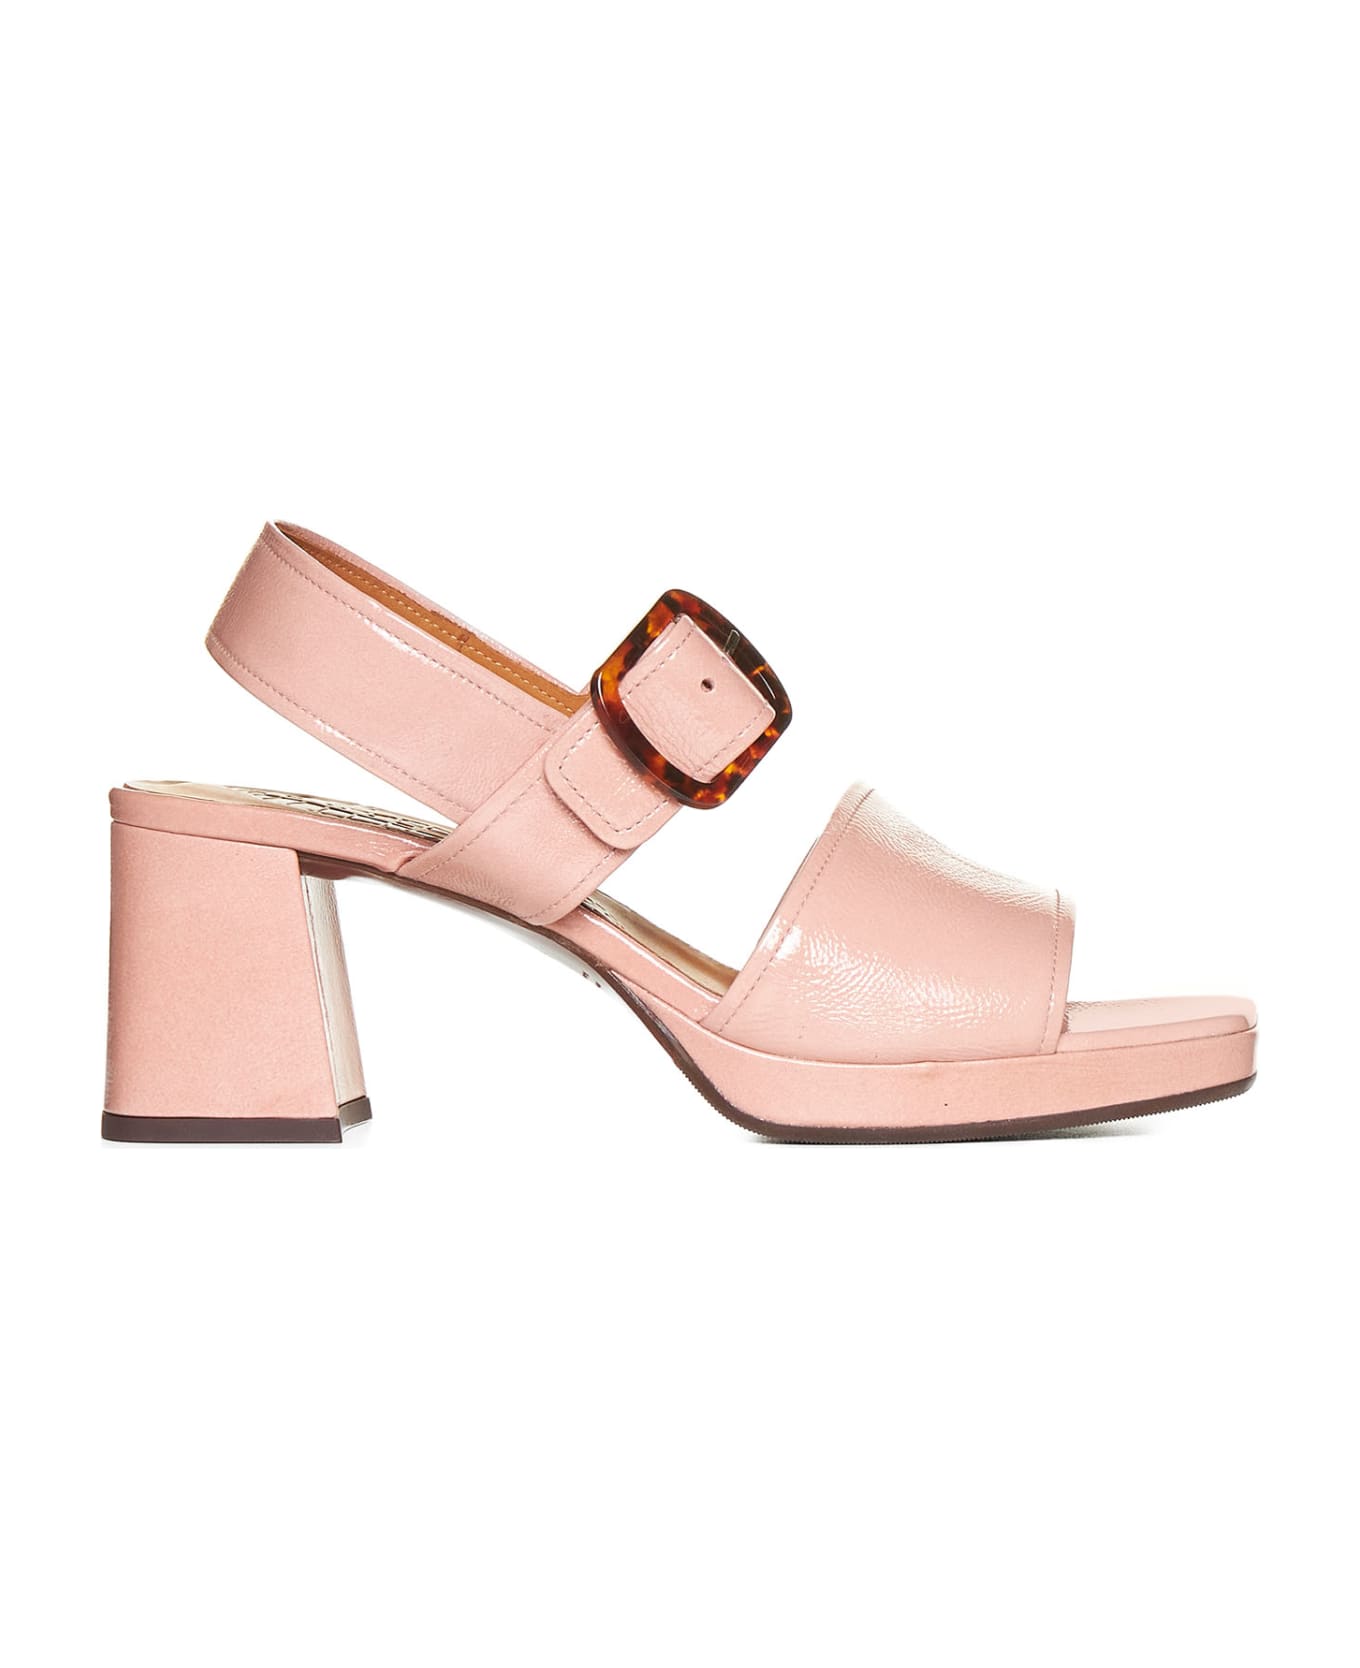 Chie Mihara Sandals - Ferrari pink